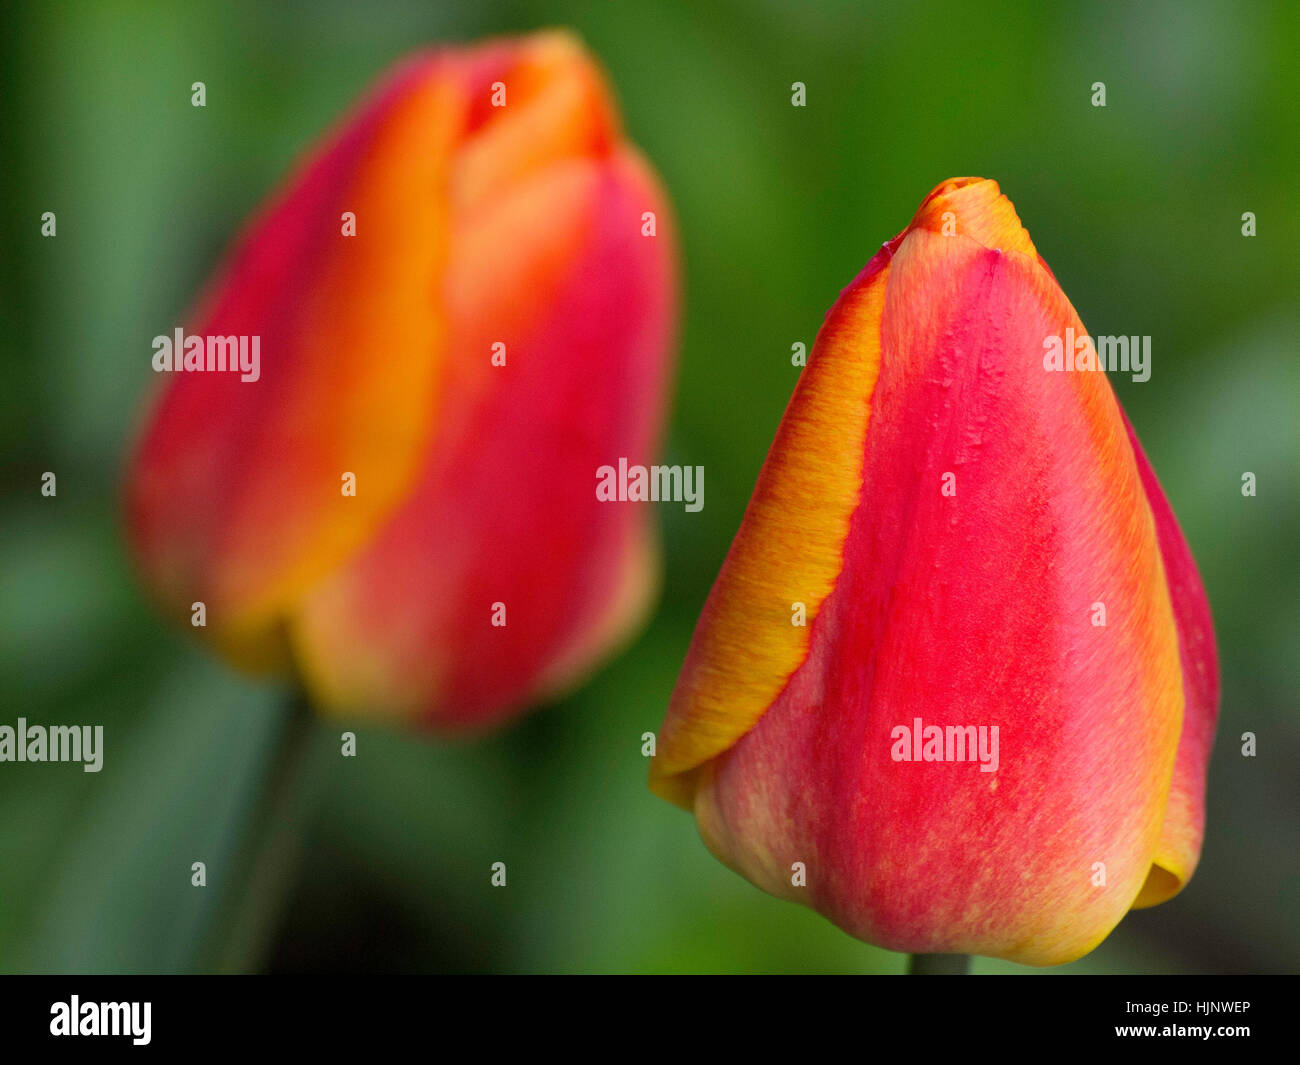 park, garden, flower, plant, spring, tulips, gardens, nature, flower, plant, Stock Photo